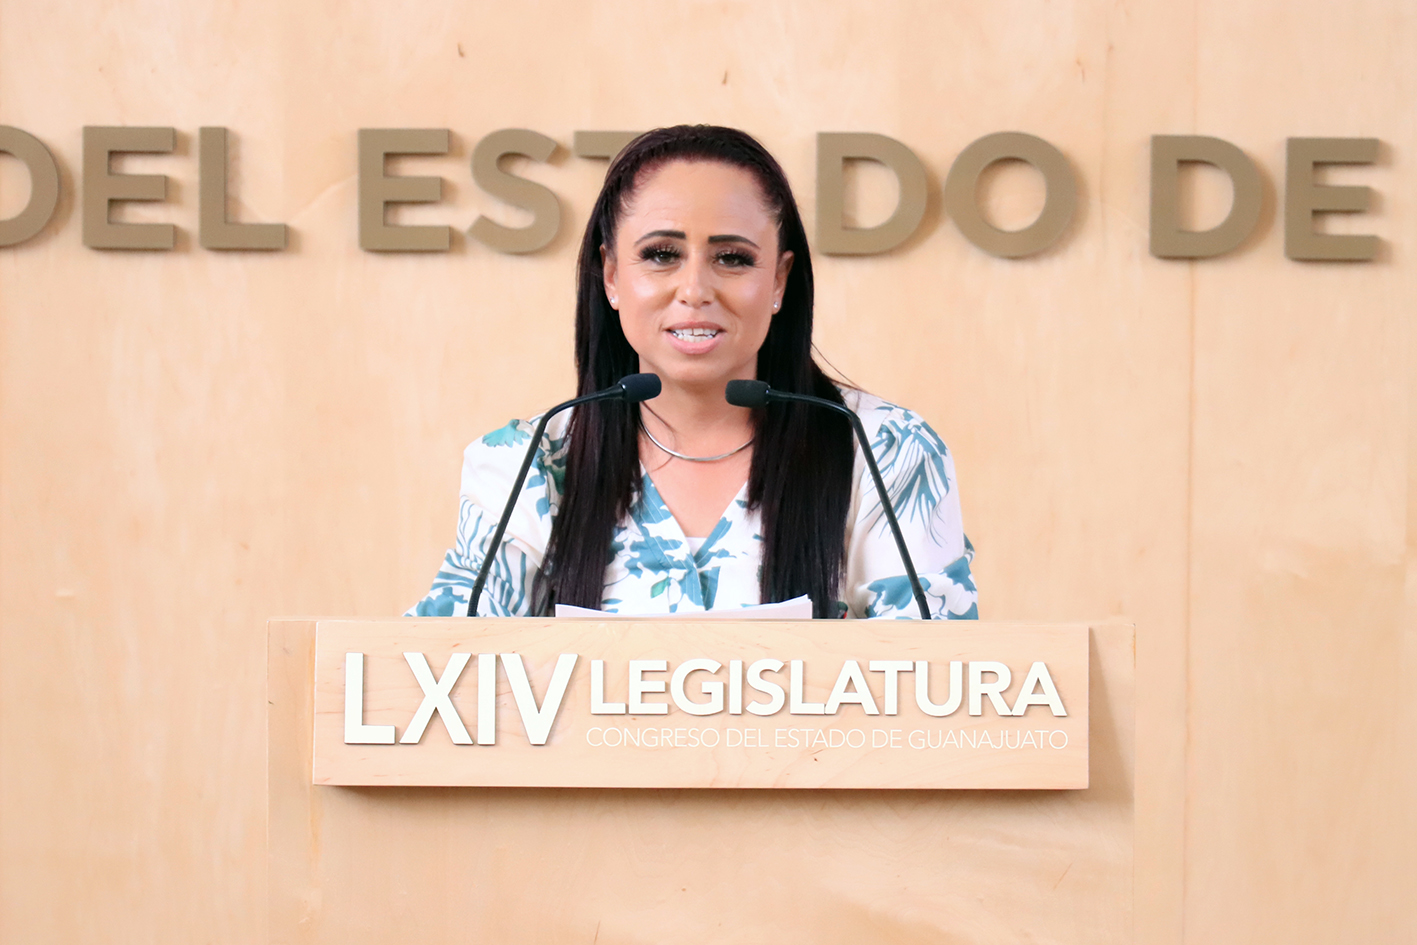 "La preservación de los pueblos indígenas contribuye al desarrollo, la pluralidad y diversidad cultural de nuestras sociedades", dijo la diputada Lupita Moreno